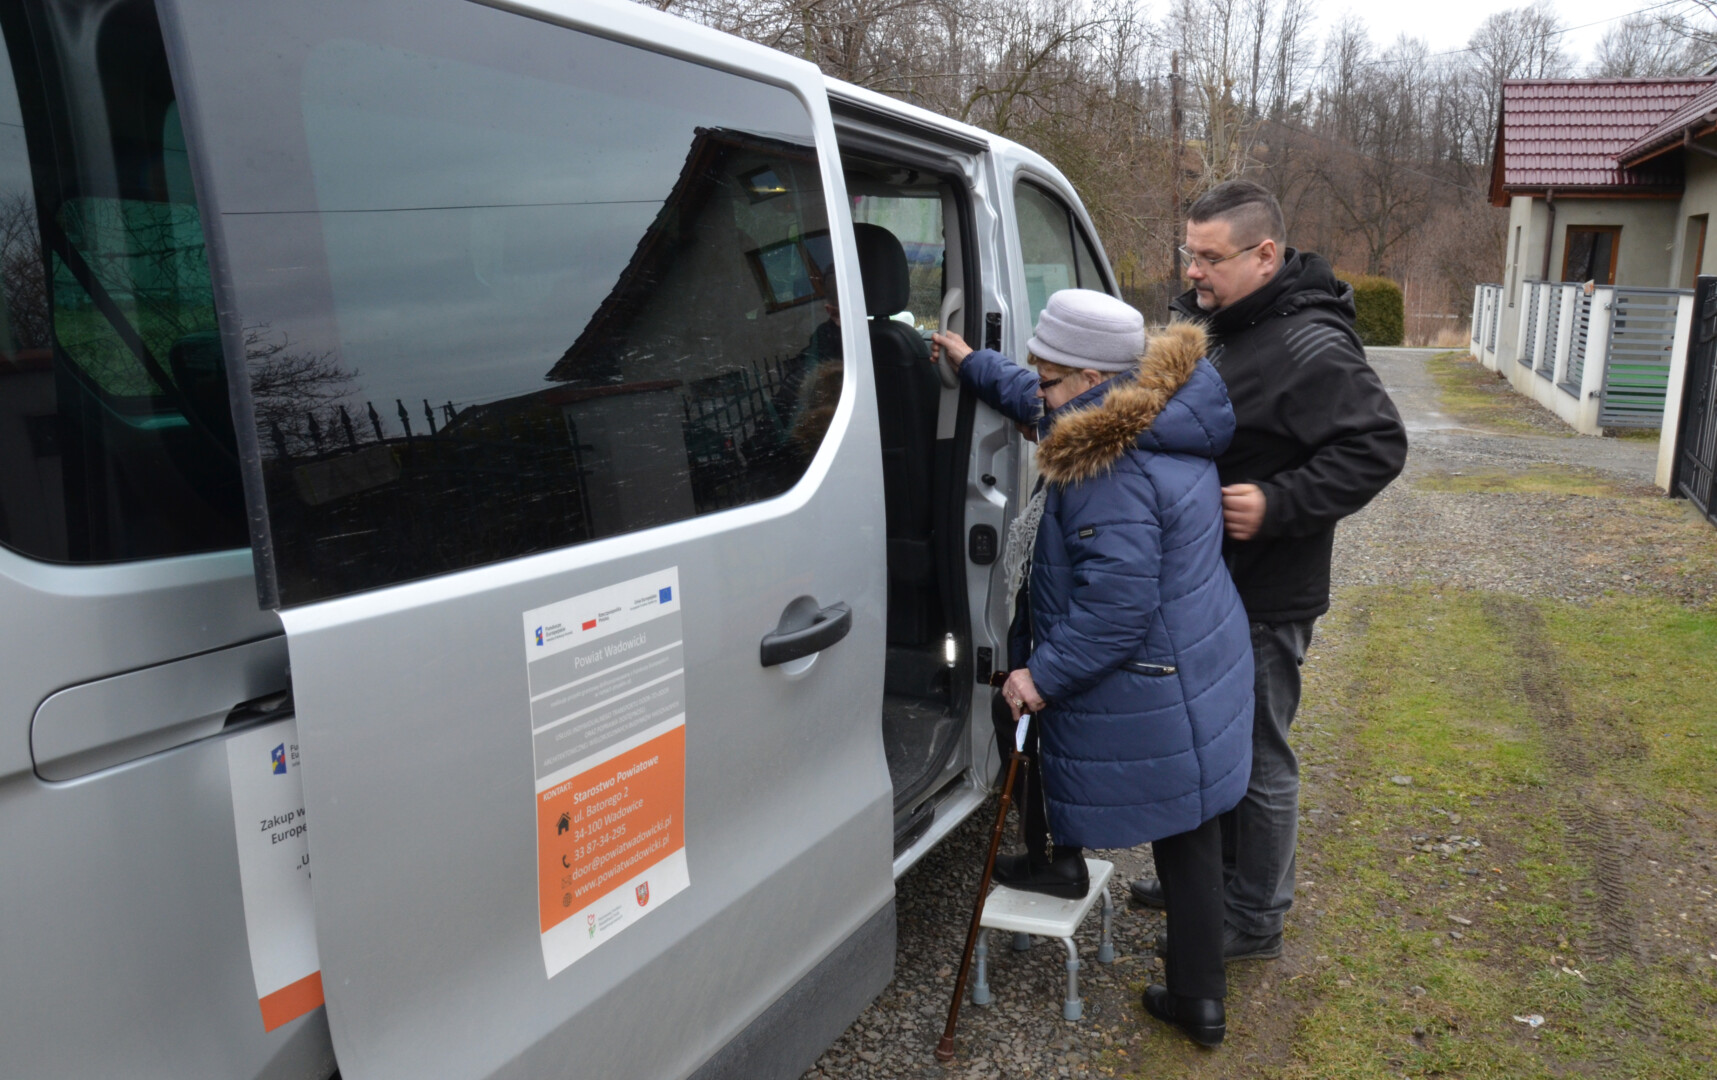 Starostwo Powiatowe w Wadowicach oferuje bezpłatny transport door-to-door